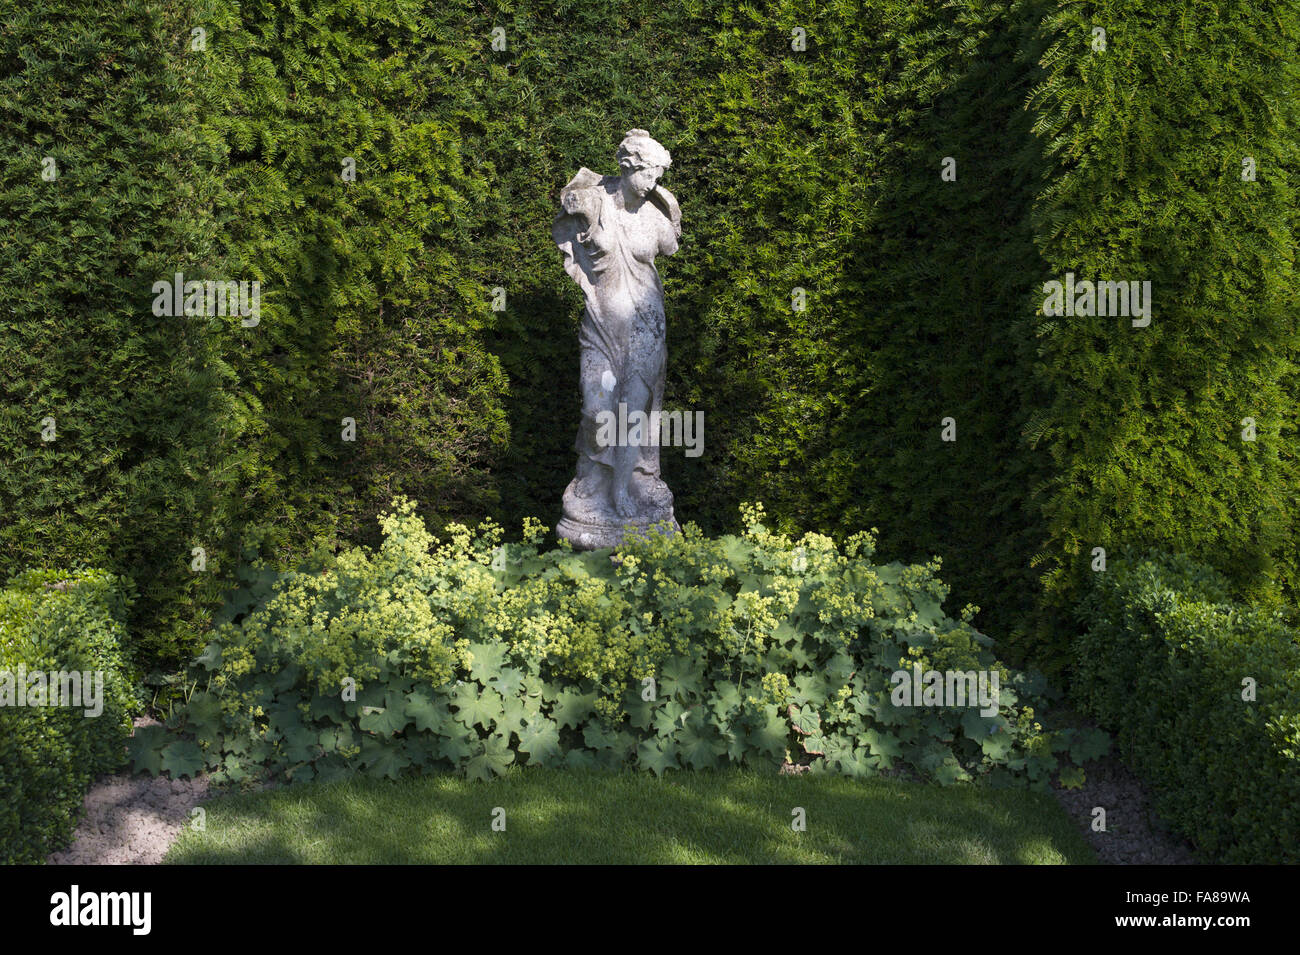 Eine Statue in den Gärten im Juli auf Sissinghurst Castle, Kent. Sissinghurst erlangte internationale Bekanntheit in den 1930er Jahren, Vita Sackville-West und Harold Nicolson dort einen Garten erstellt. Stockfoto